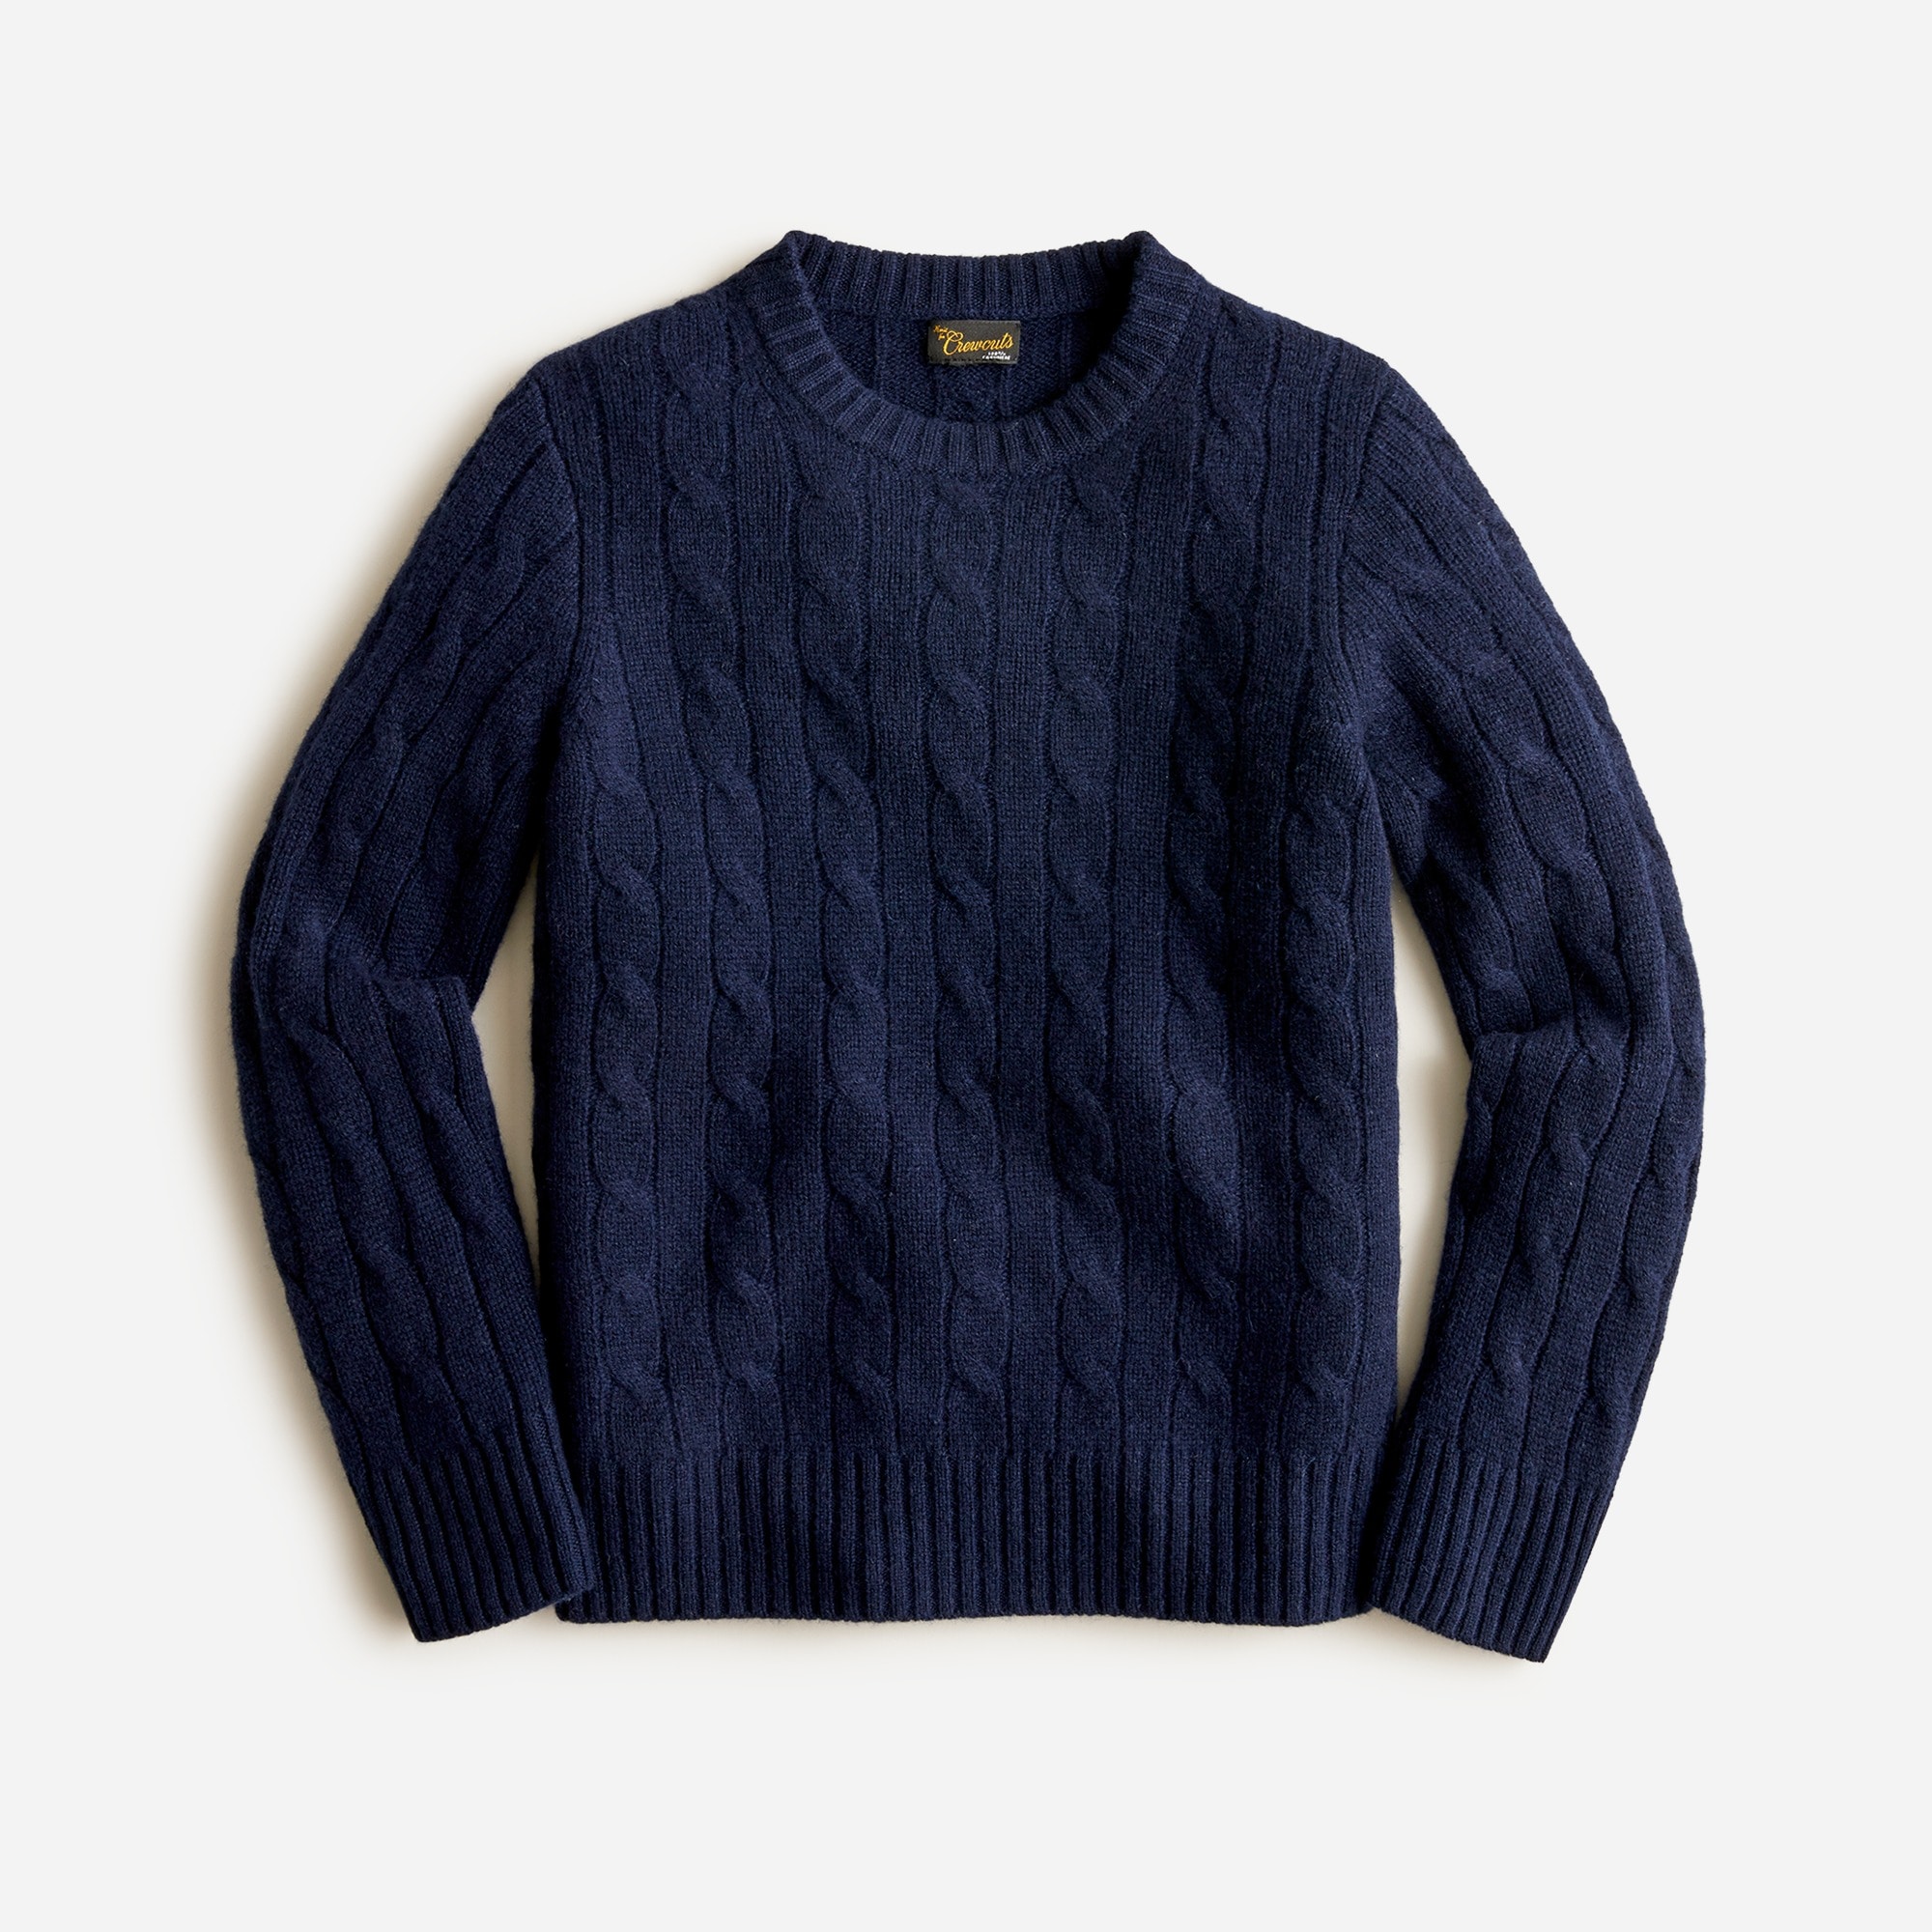 제이크루 보이즈 스웨터 J.crew Boys cable-knit cashmere crewneck sweater,NAVY